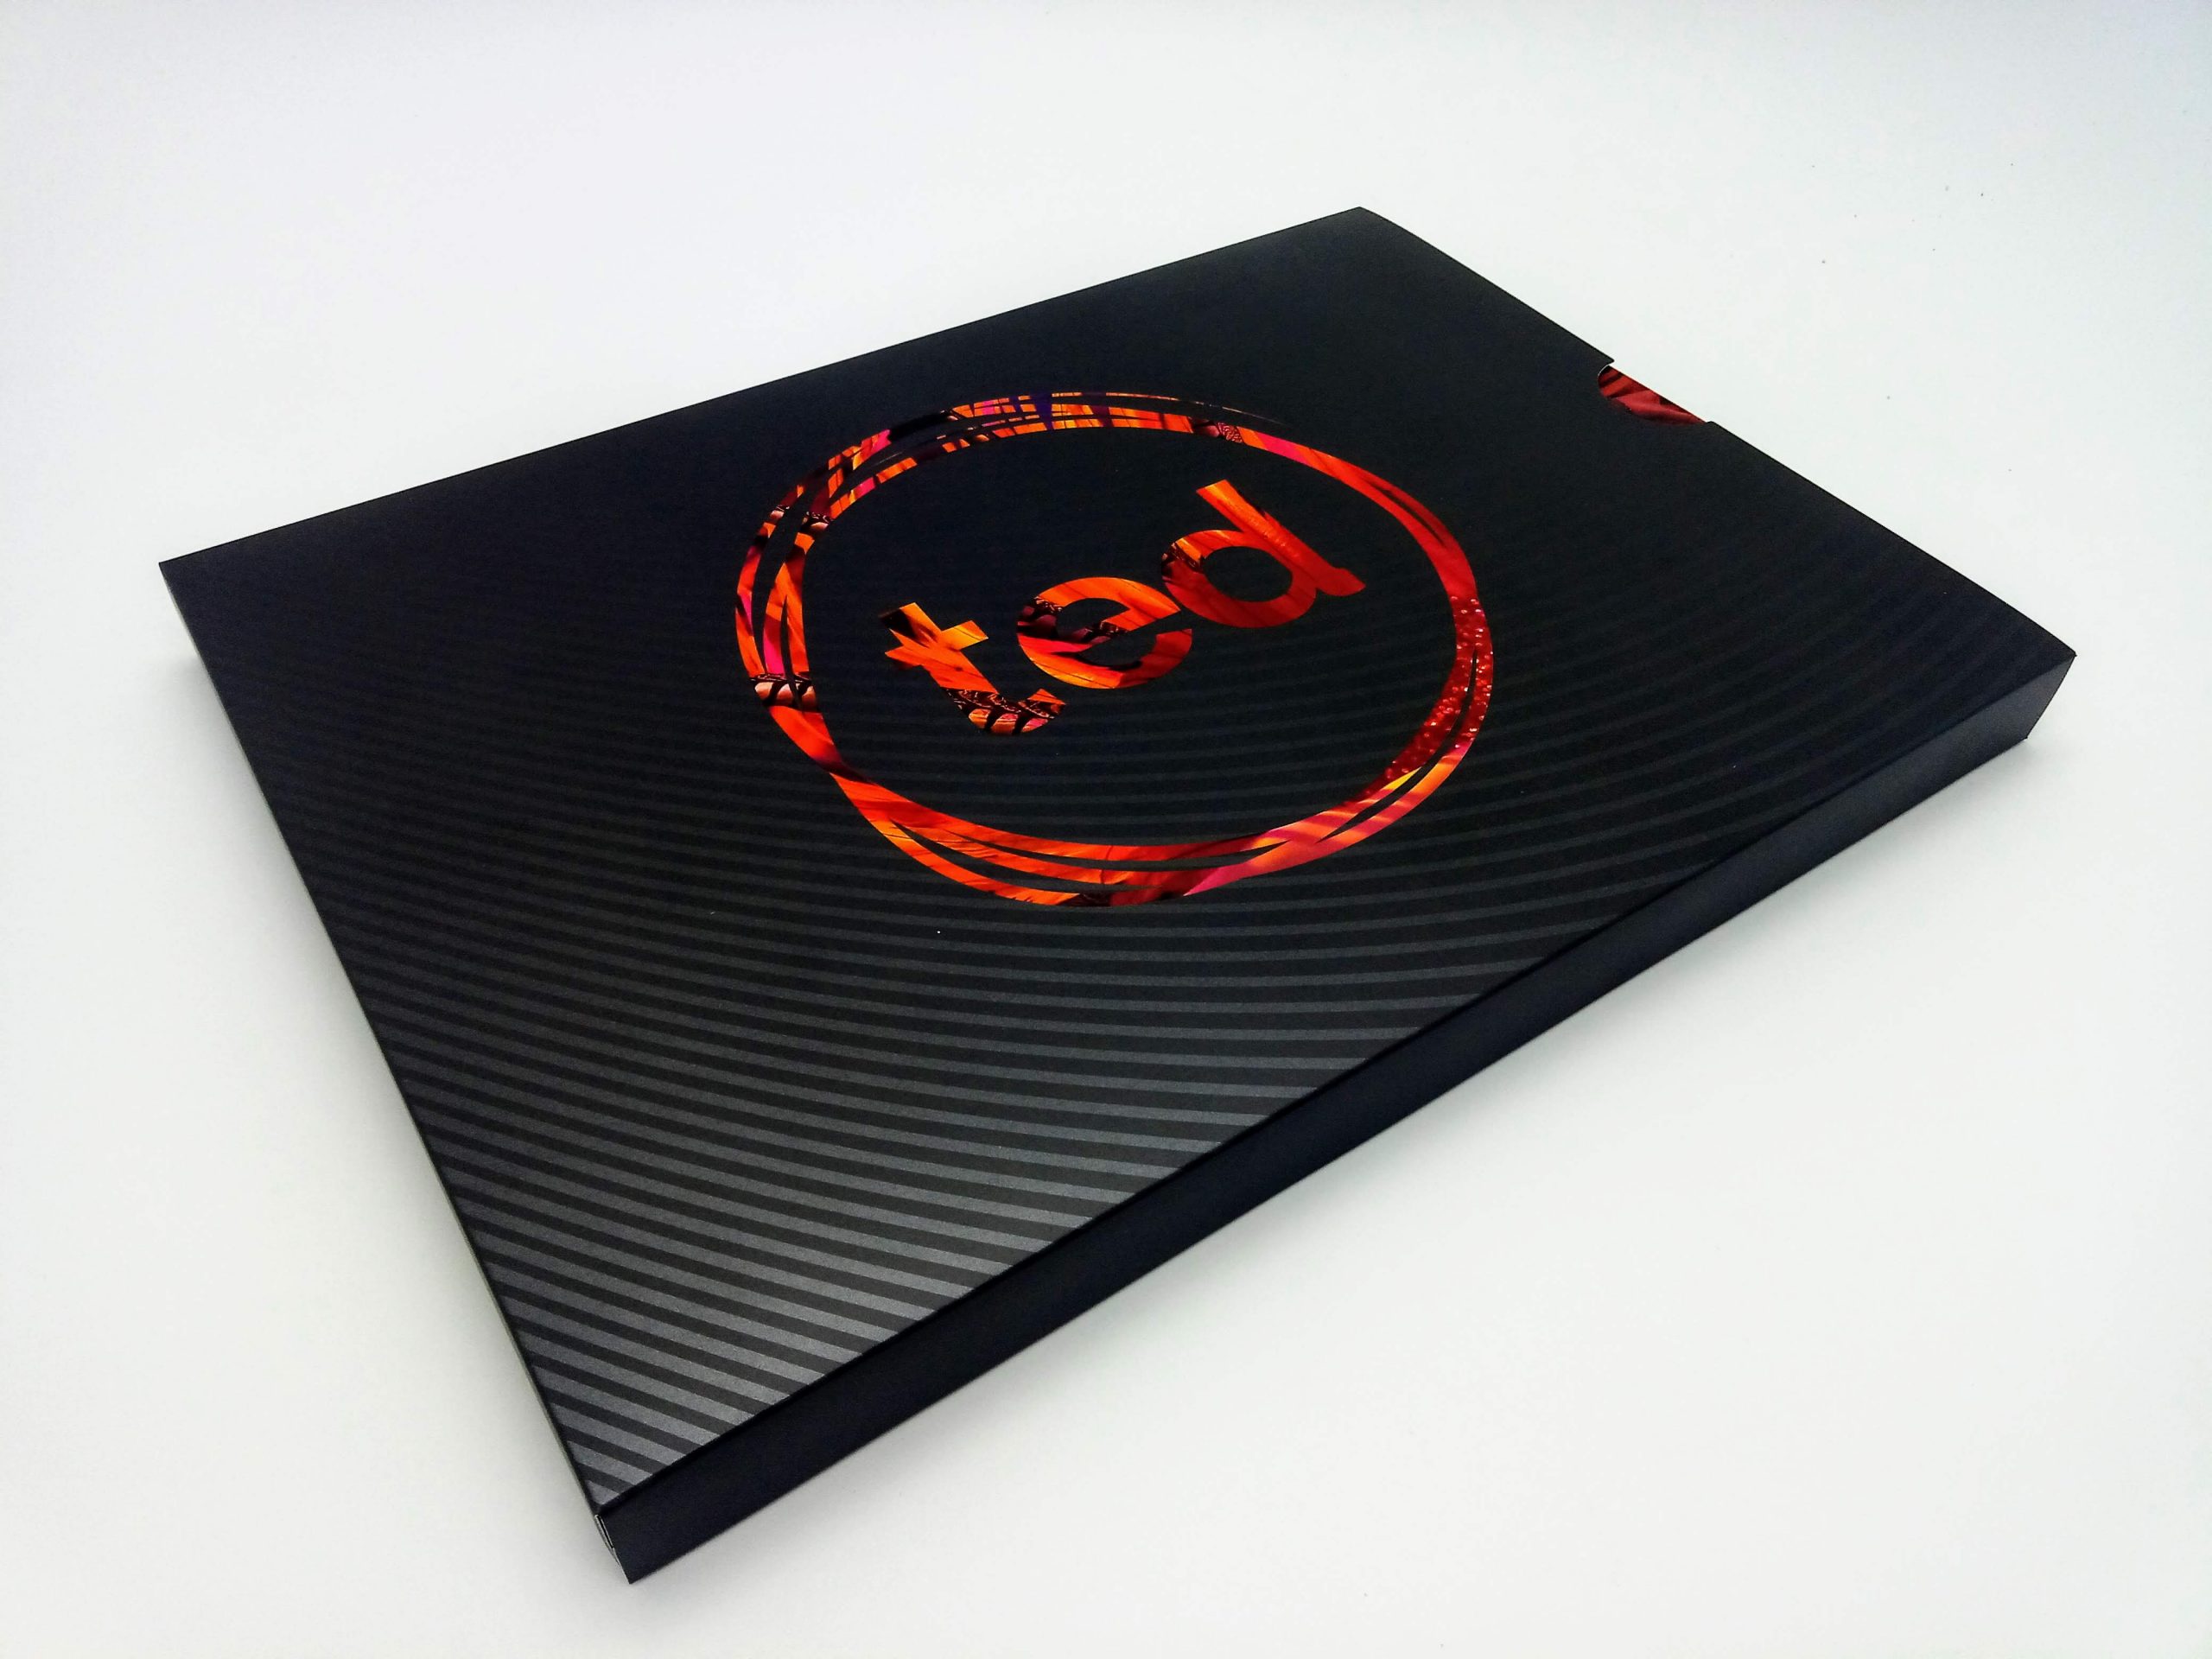 10-inch hardcover video brochure's slip case featuring spot UV varnish